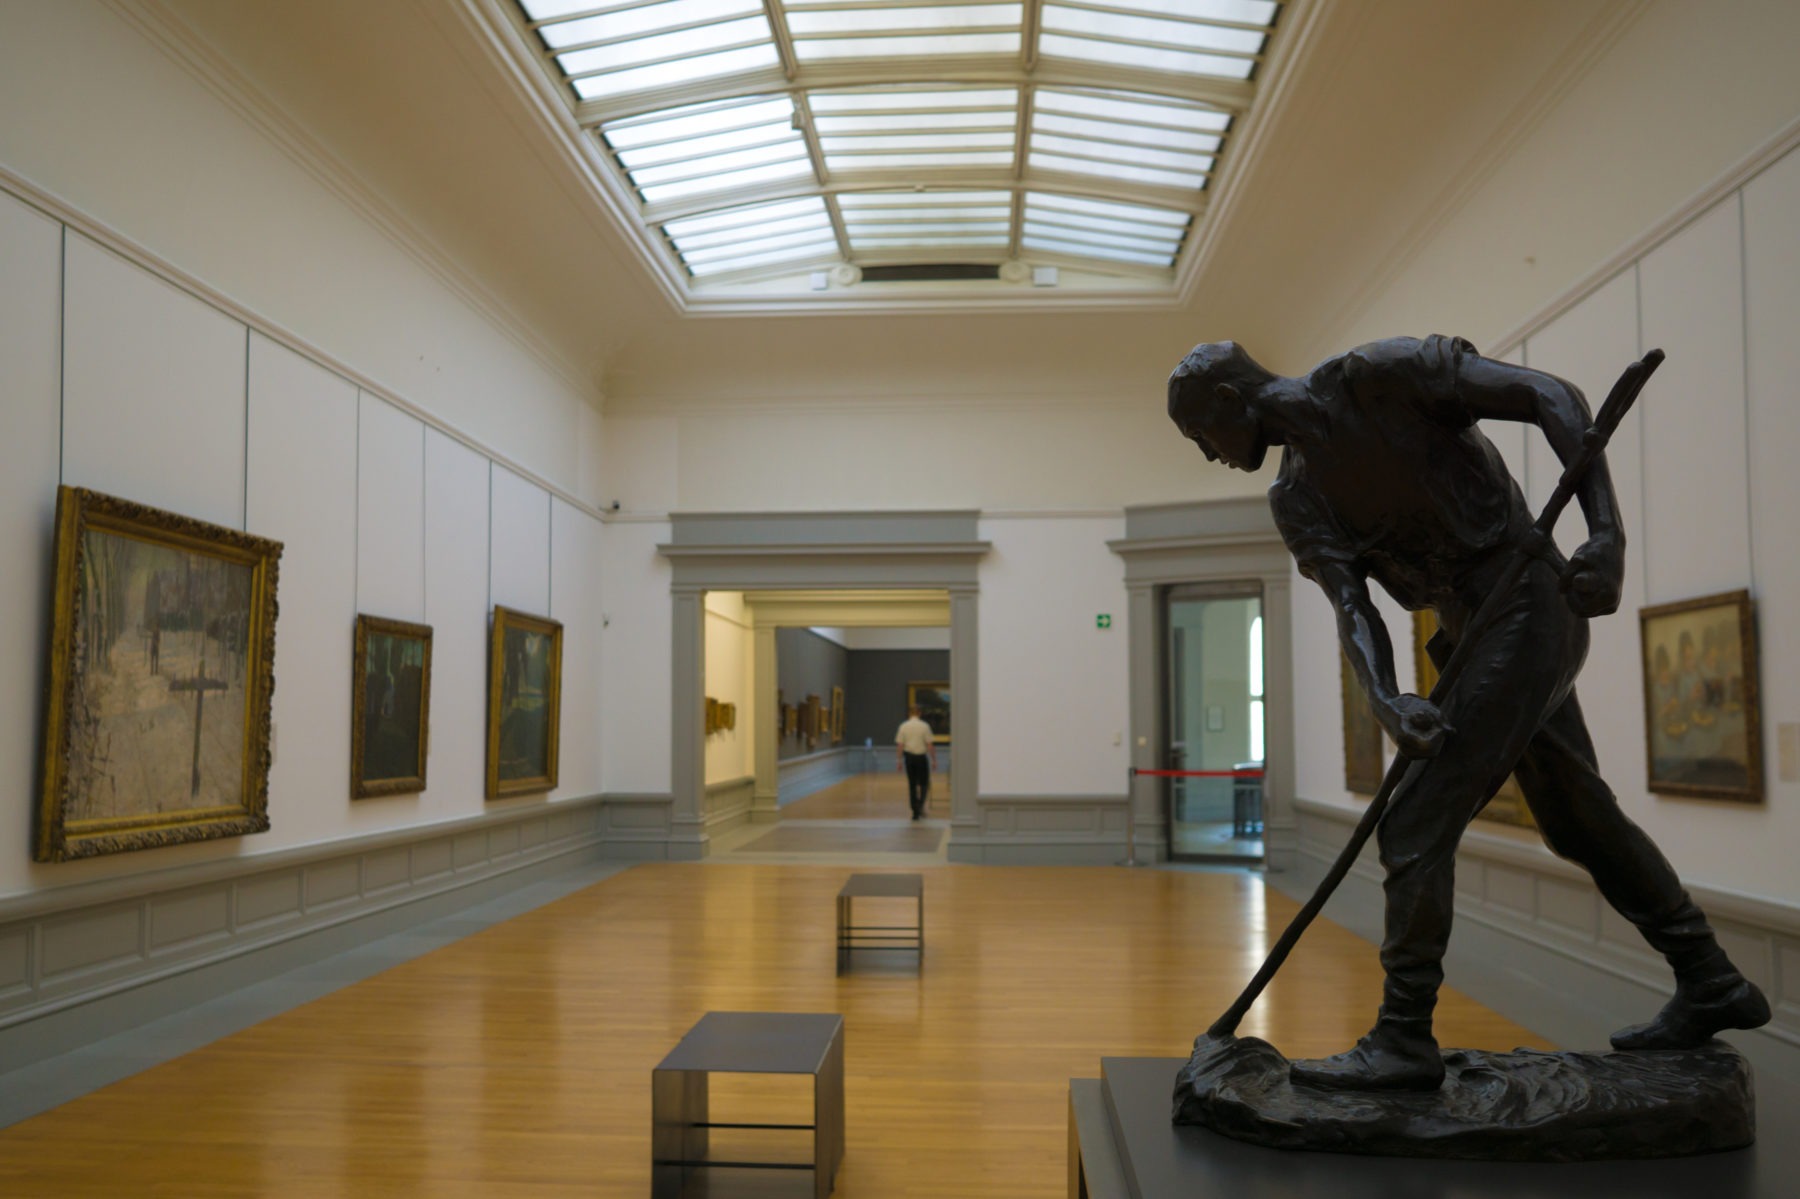 Apprendre le néerlandais en visitant le Musée des Beaux-Arts de Gand